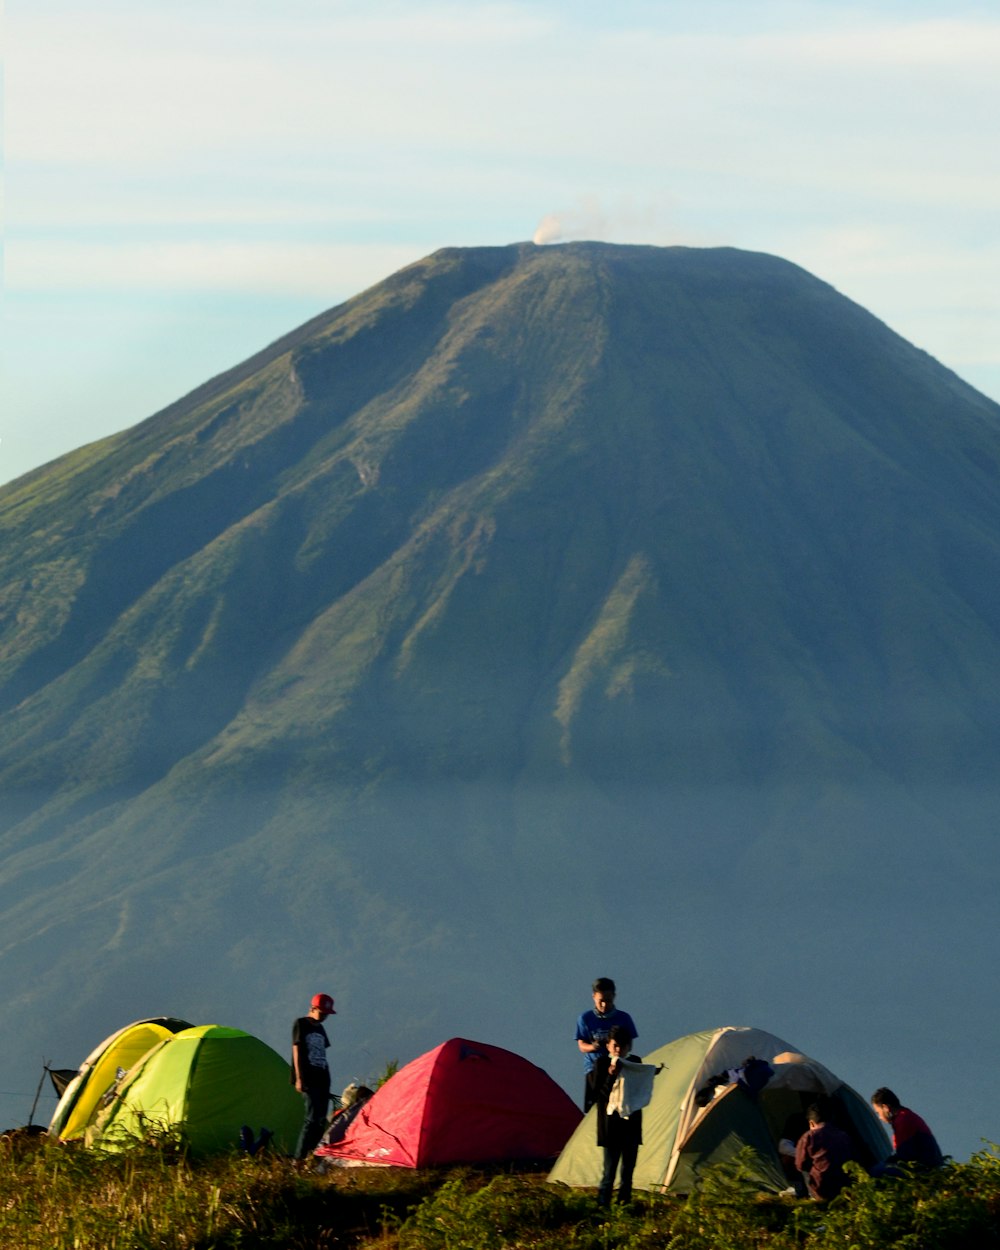 Persone che si siedono sulla tenda a cupola verde vicino alla montagna durante il giorno